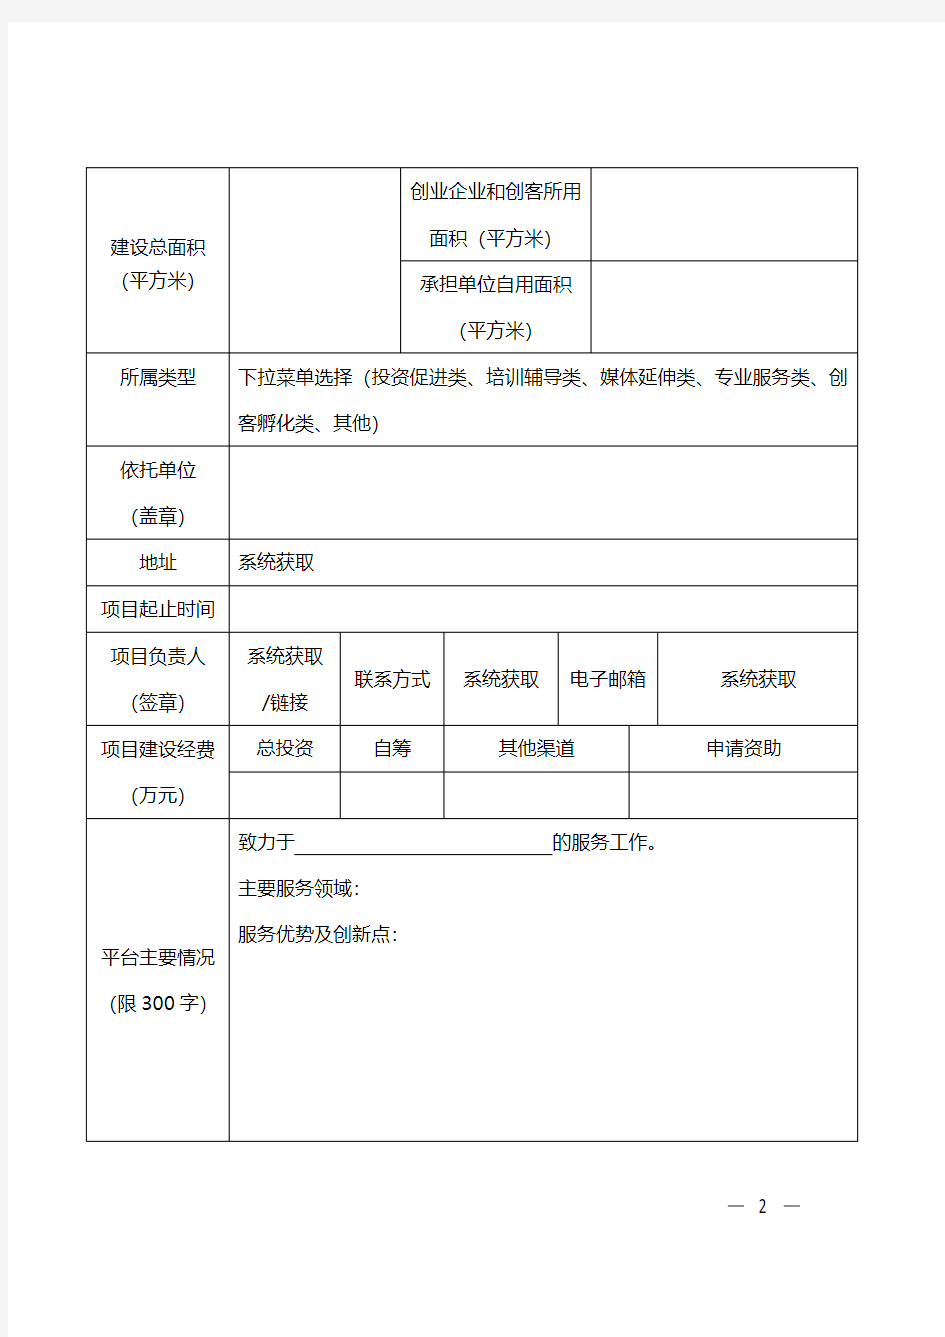 重庆市众创空间(科技企业孵化器)建设专项项目申请书【附件】